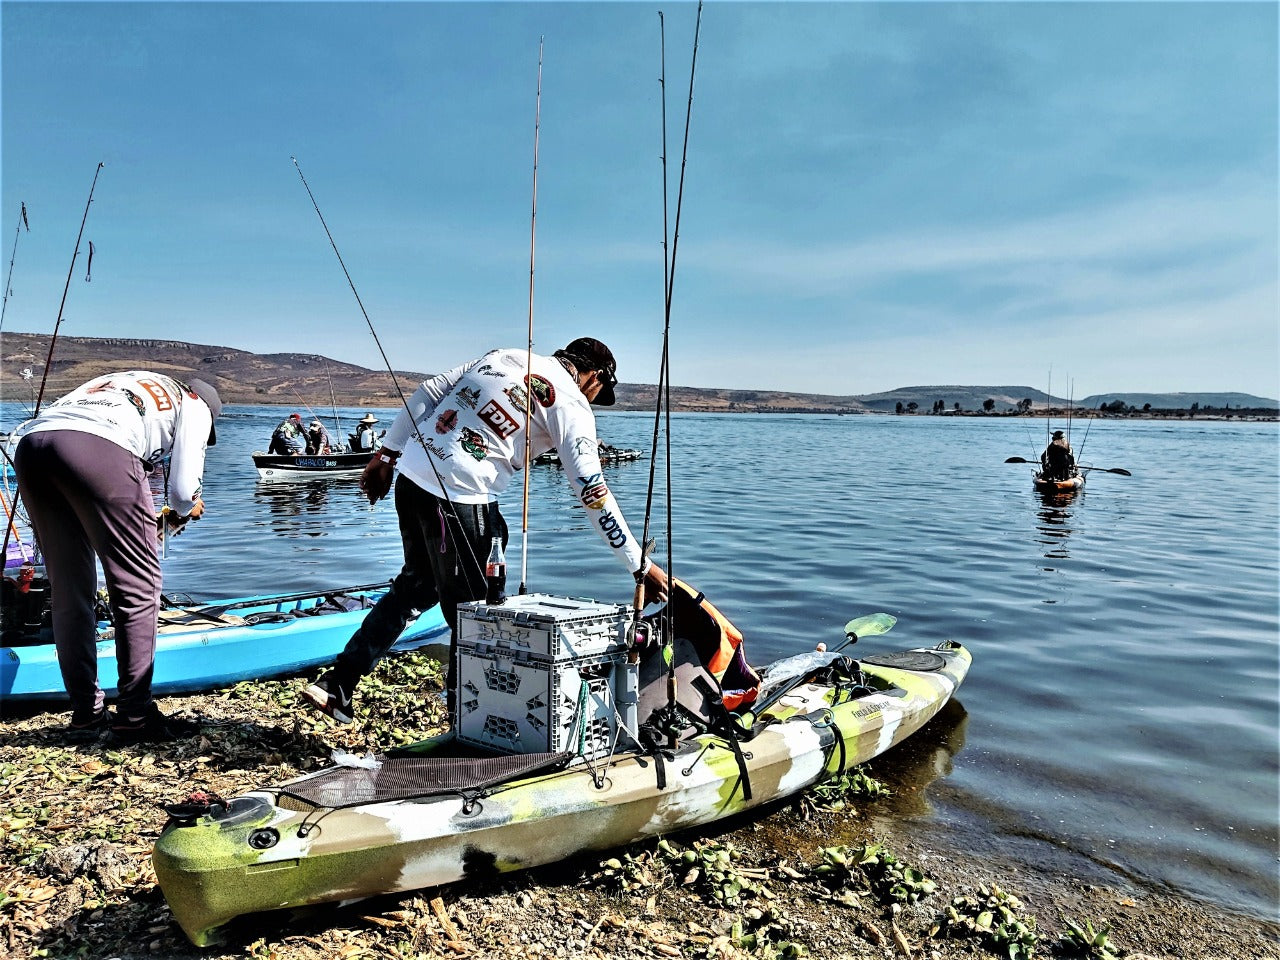 Dentro del torneo hubo 3 categorías, embarcación, kayak y orilla